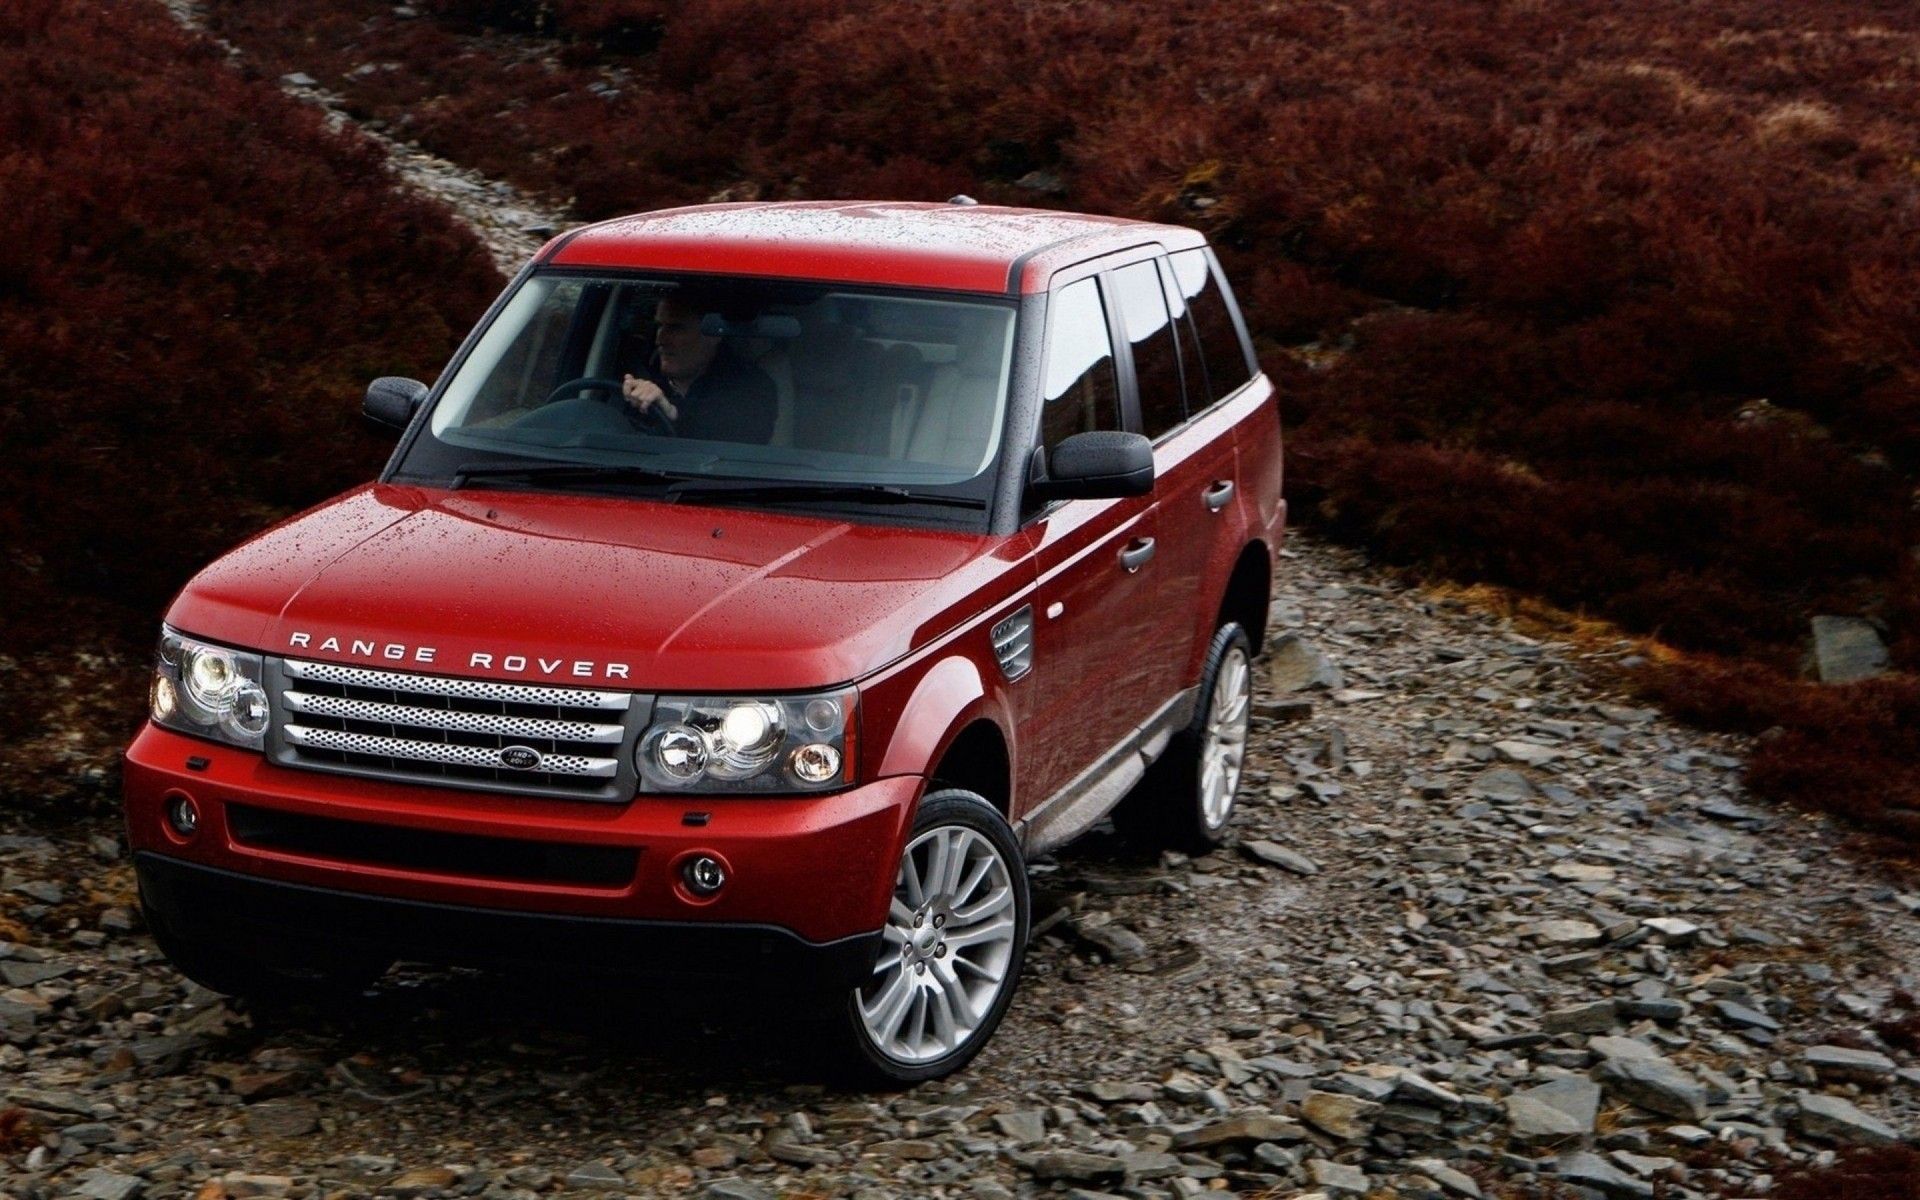 Range Rover Red, HD Cars, 4k Wallpaper .hdqwalls.com